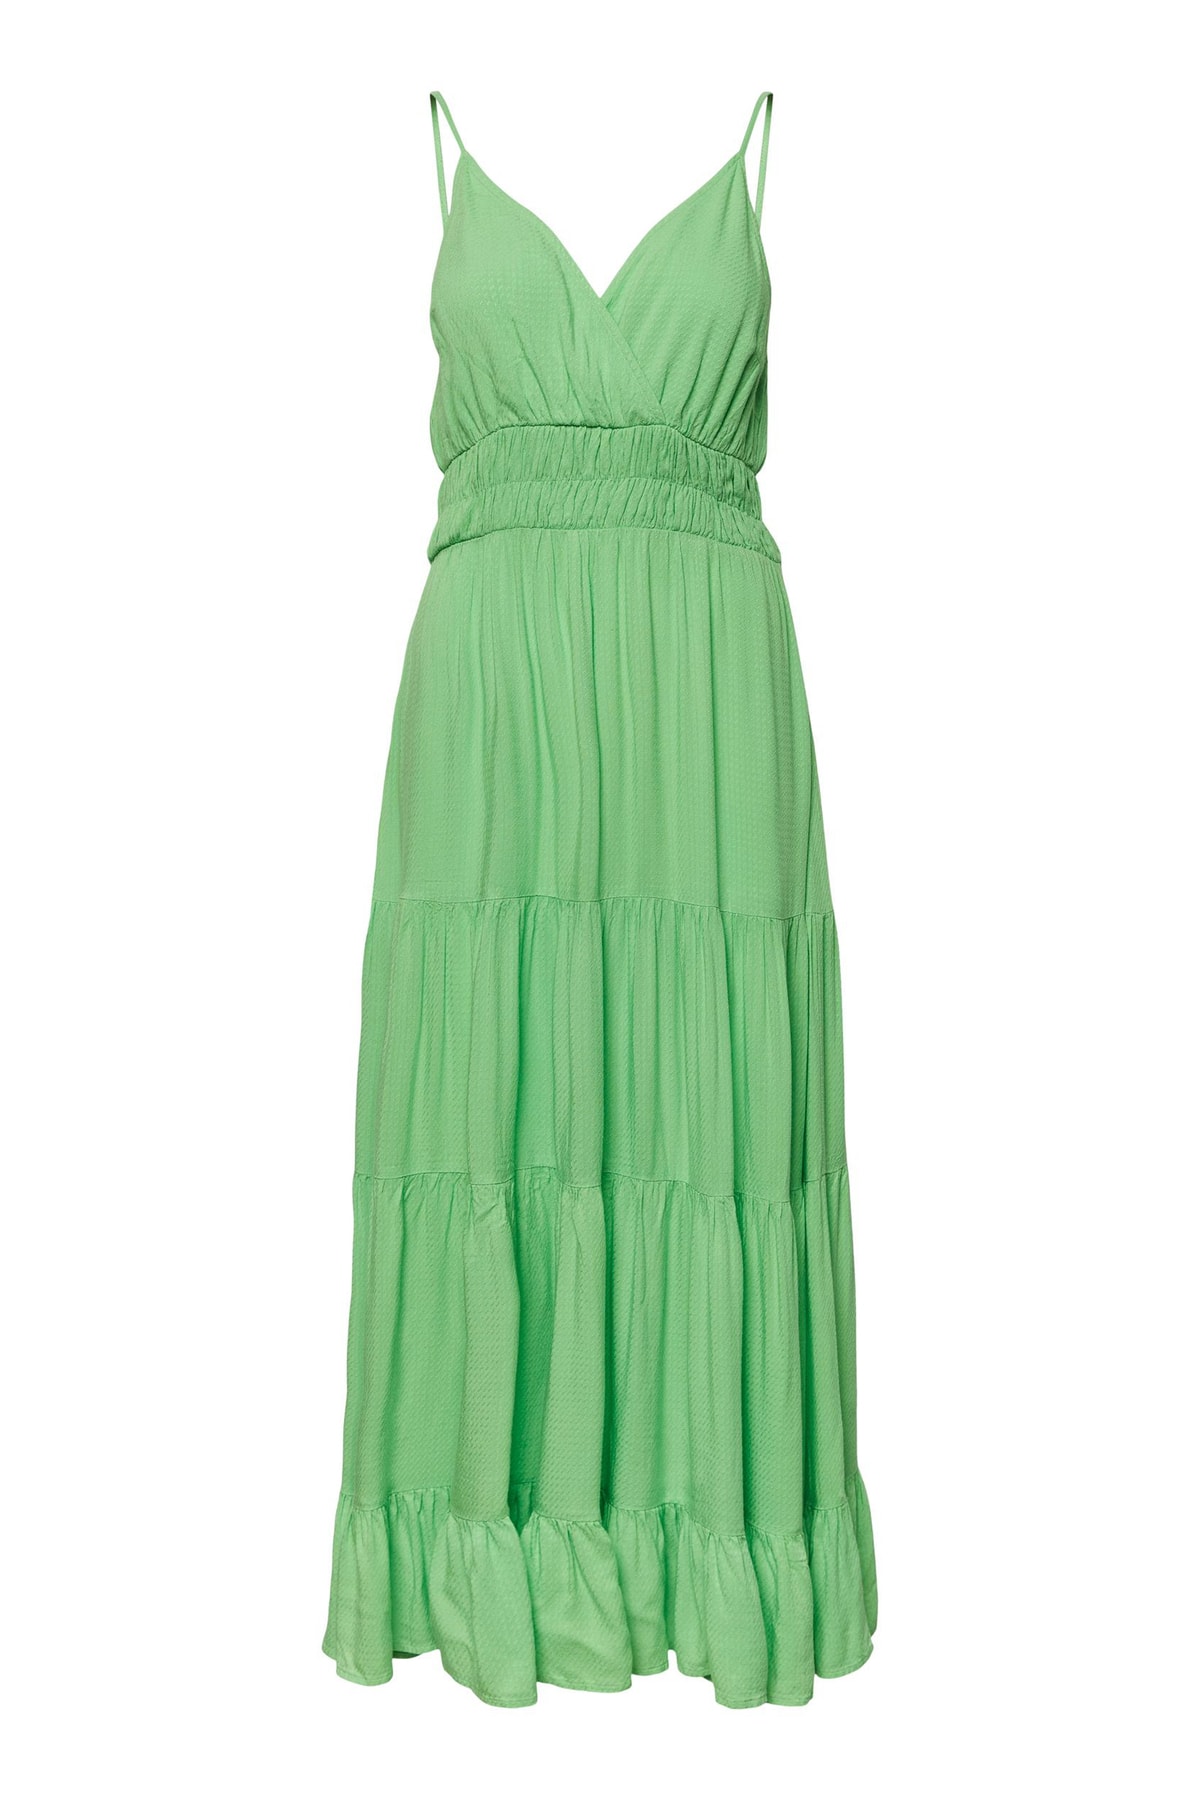 Y.A.S. Kleid Grün Smock-Kleid Fast ausverkauft